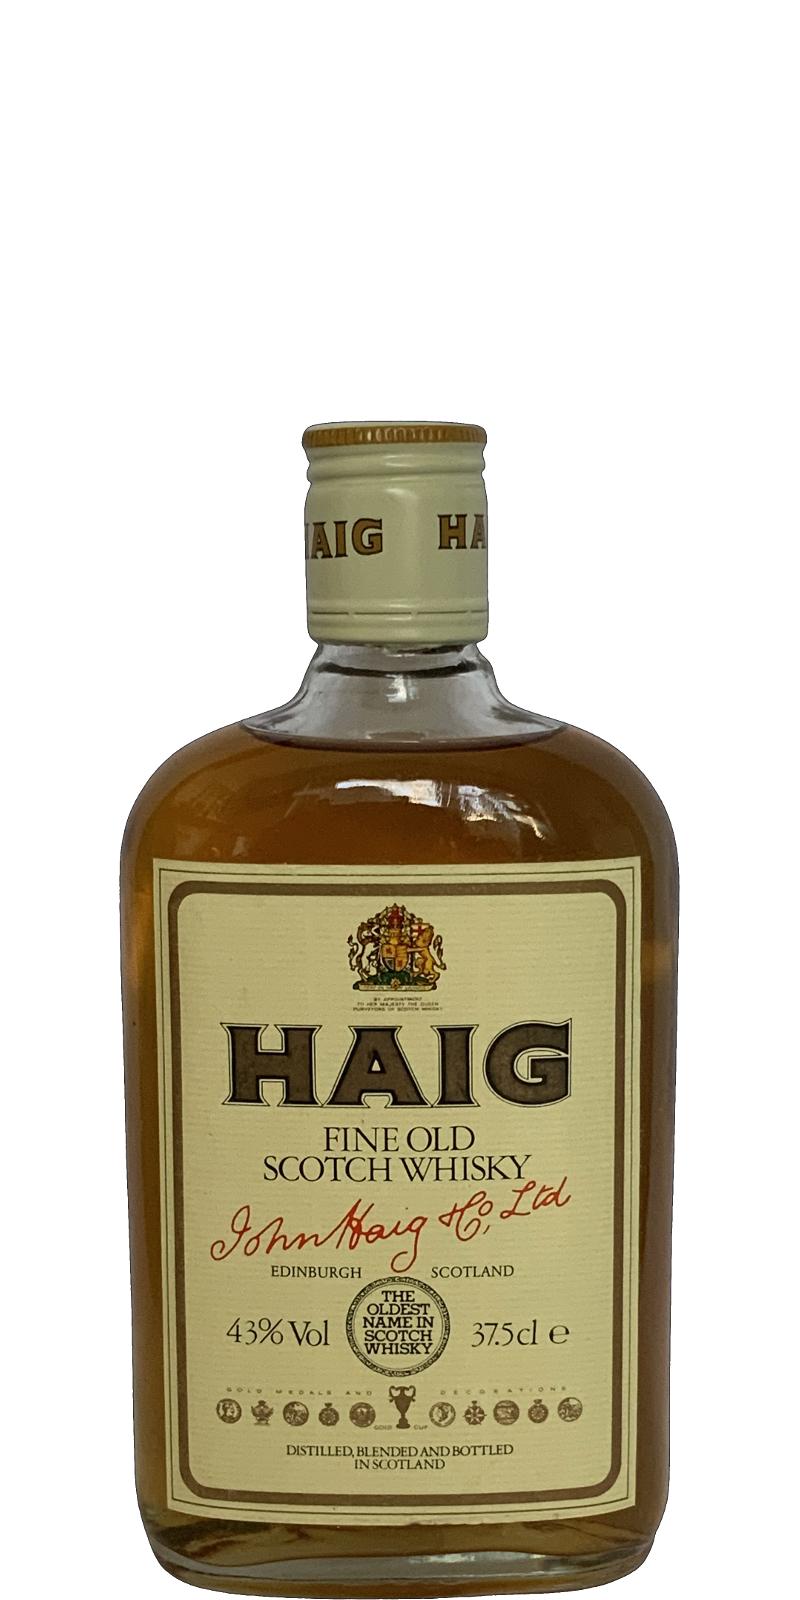 Haig Fine old Scotch Whisky Fine Old Scotch Whisky 43% 375ml